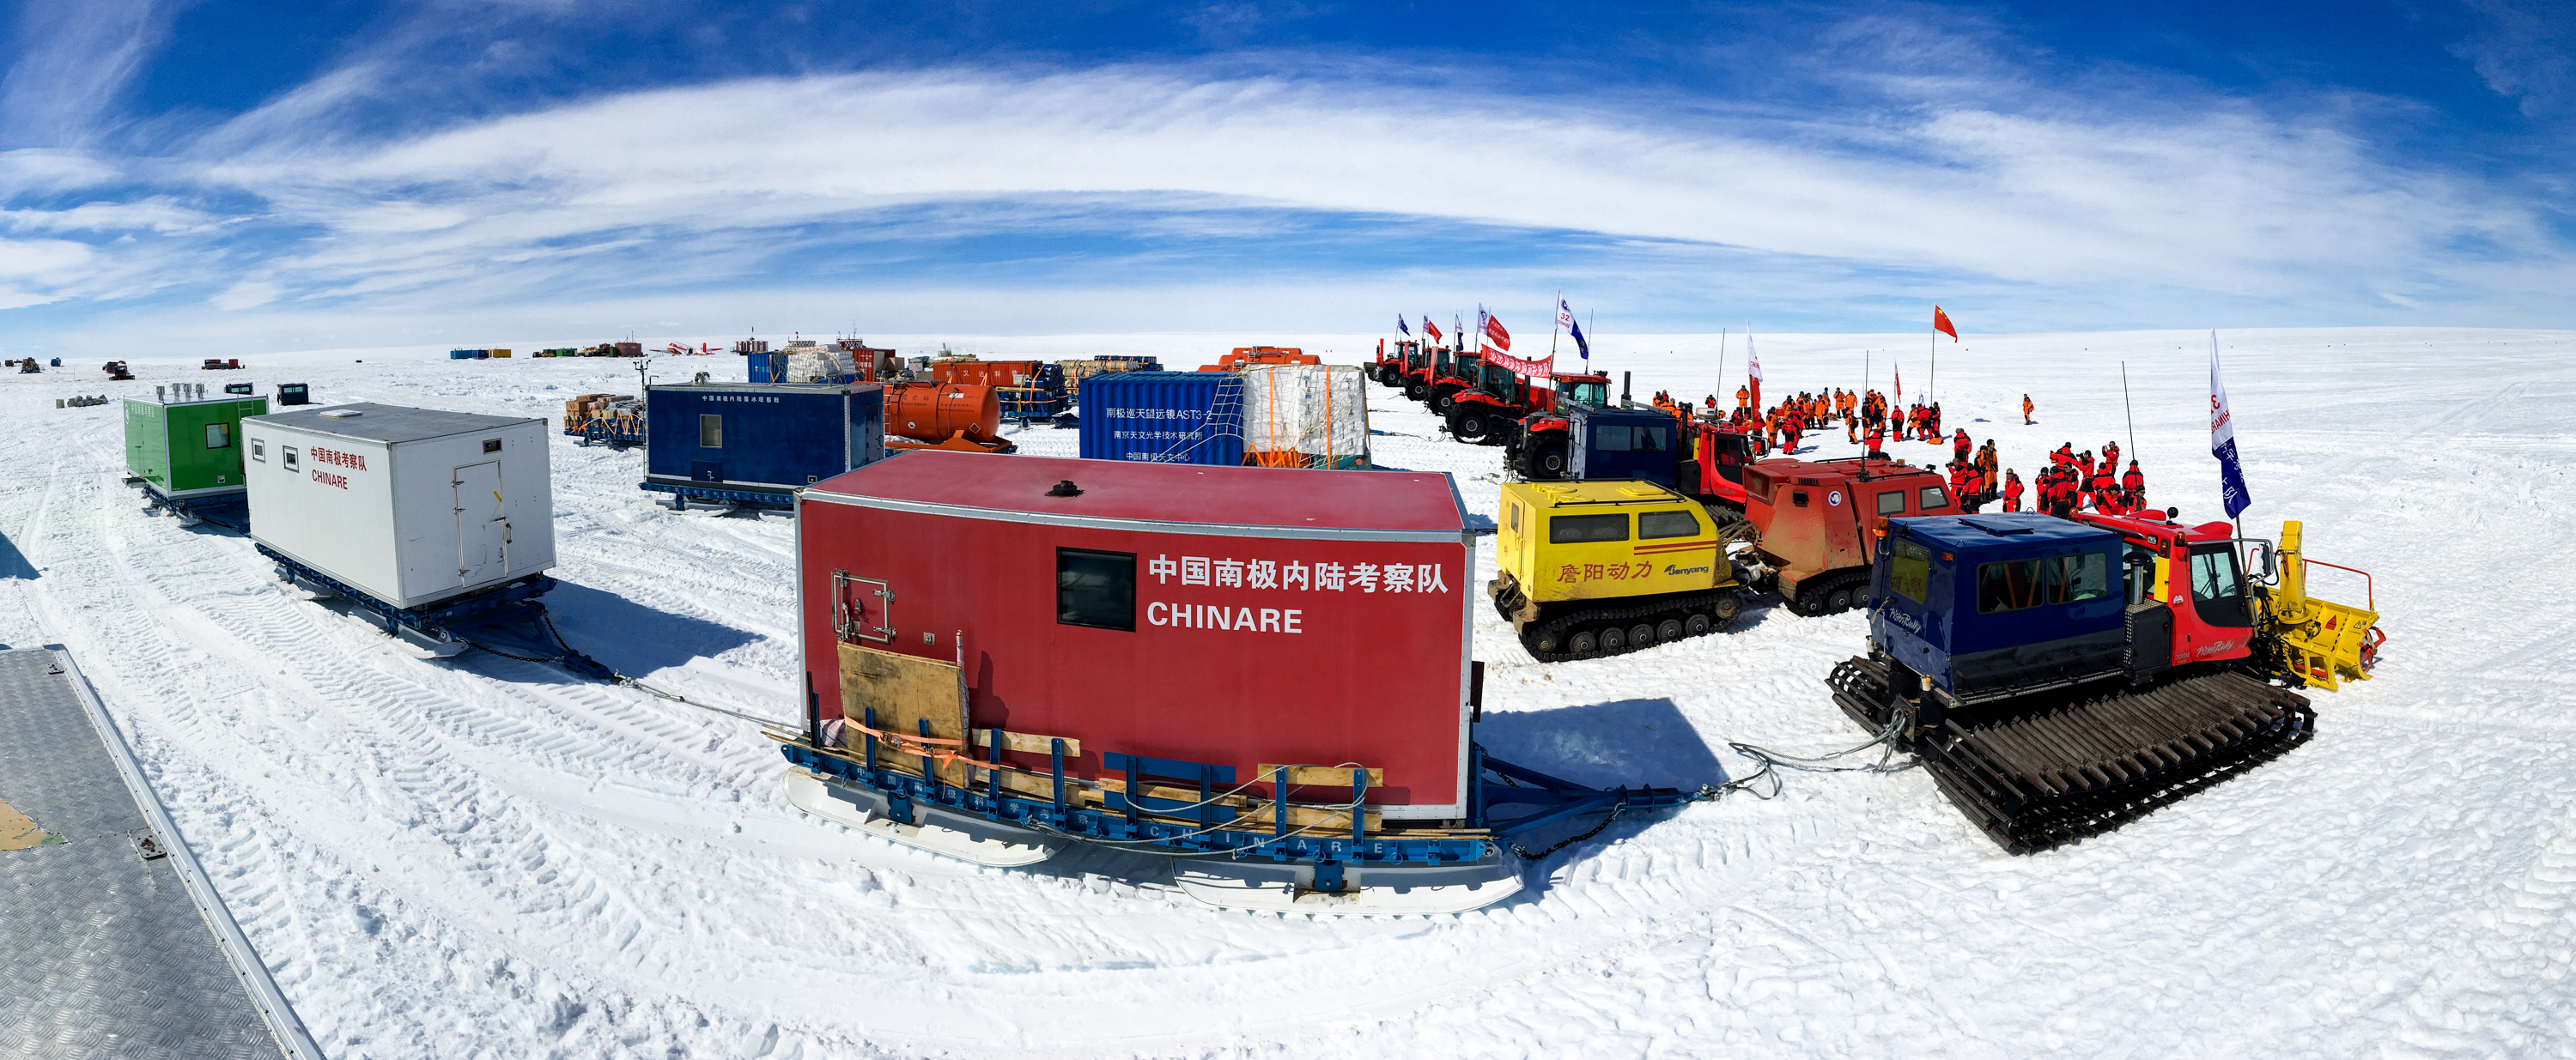 35年前,首闯南极的日子还历历在目,一个月后,中国南极考察队又将第36